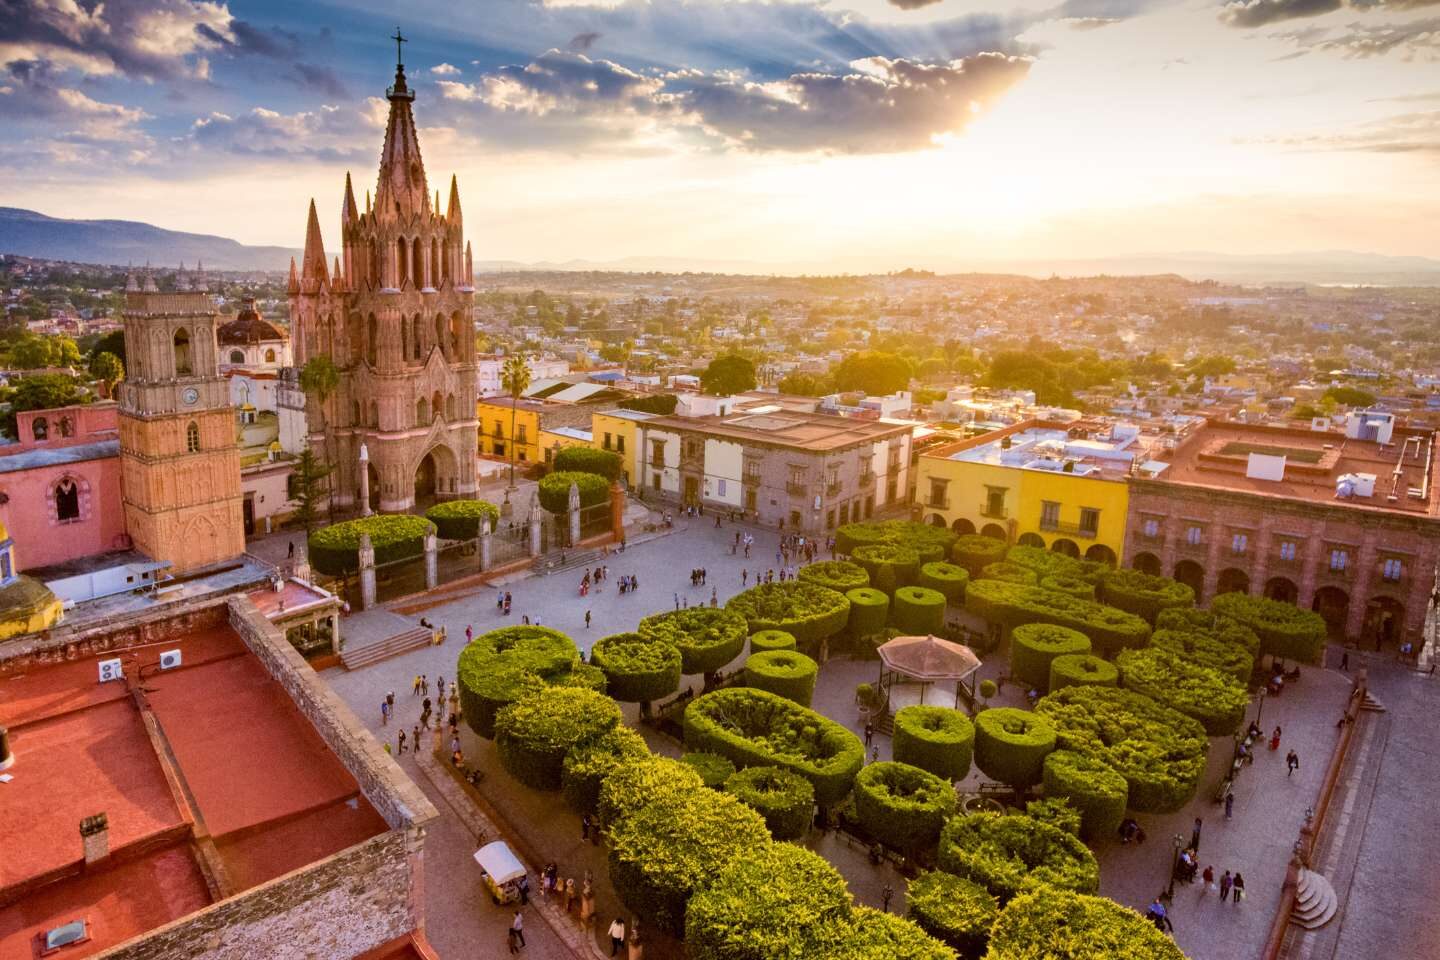 Breathtaking beautiful shot in San Miguel de Allende, Mexico